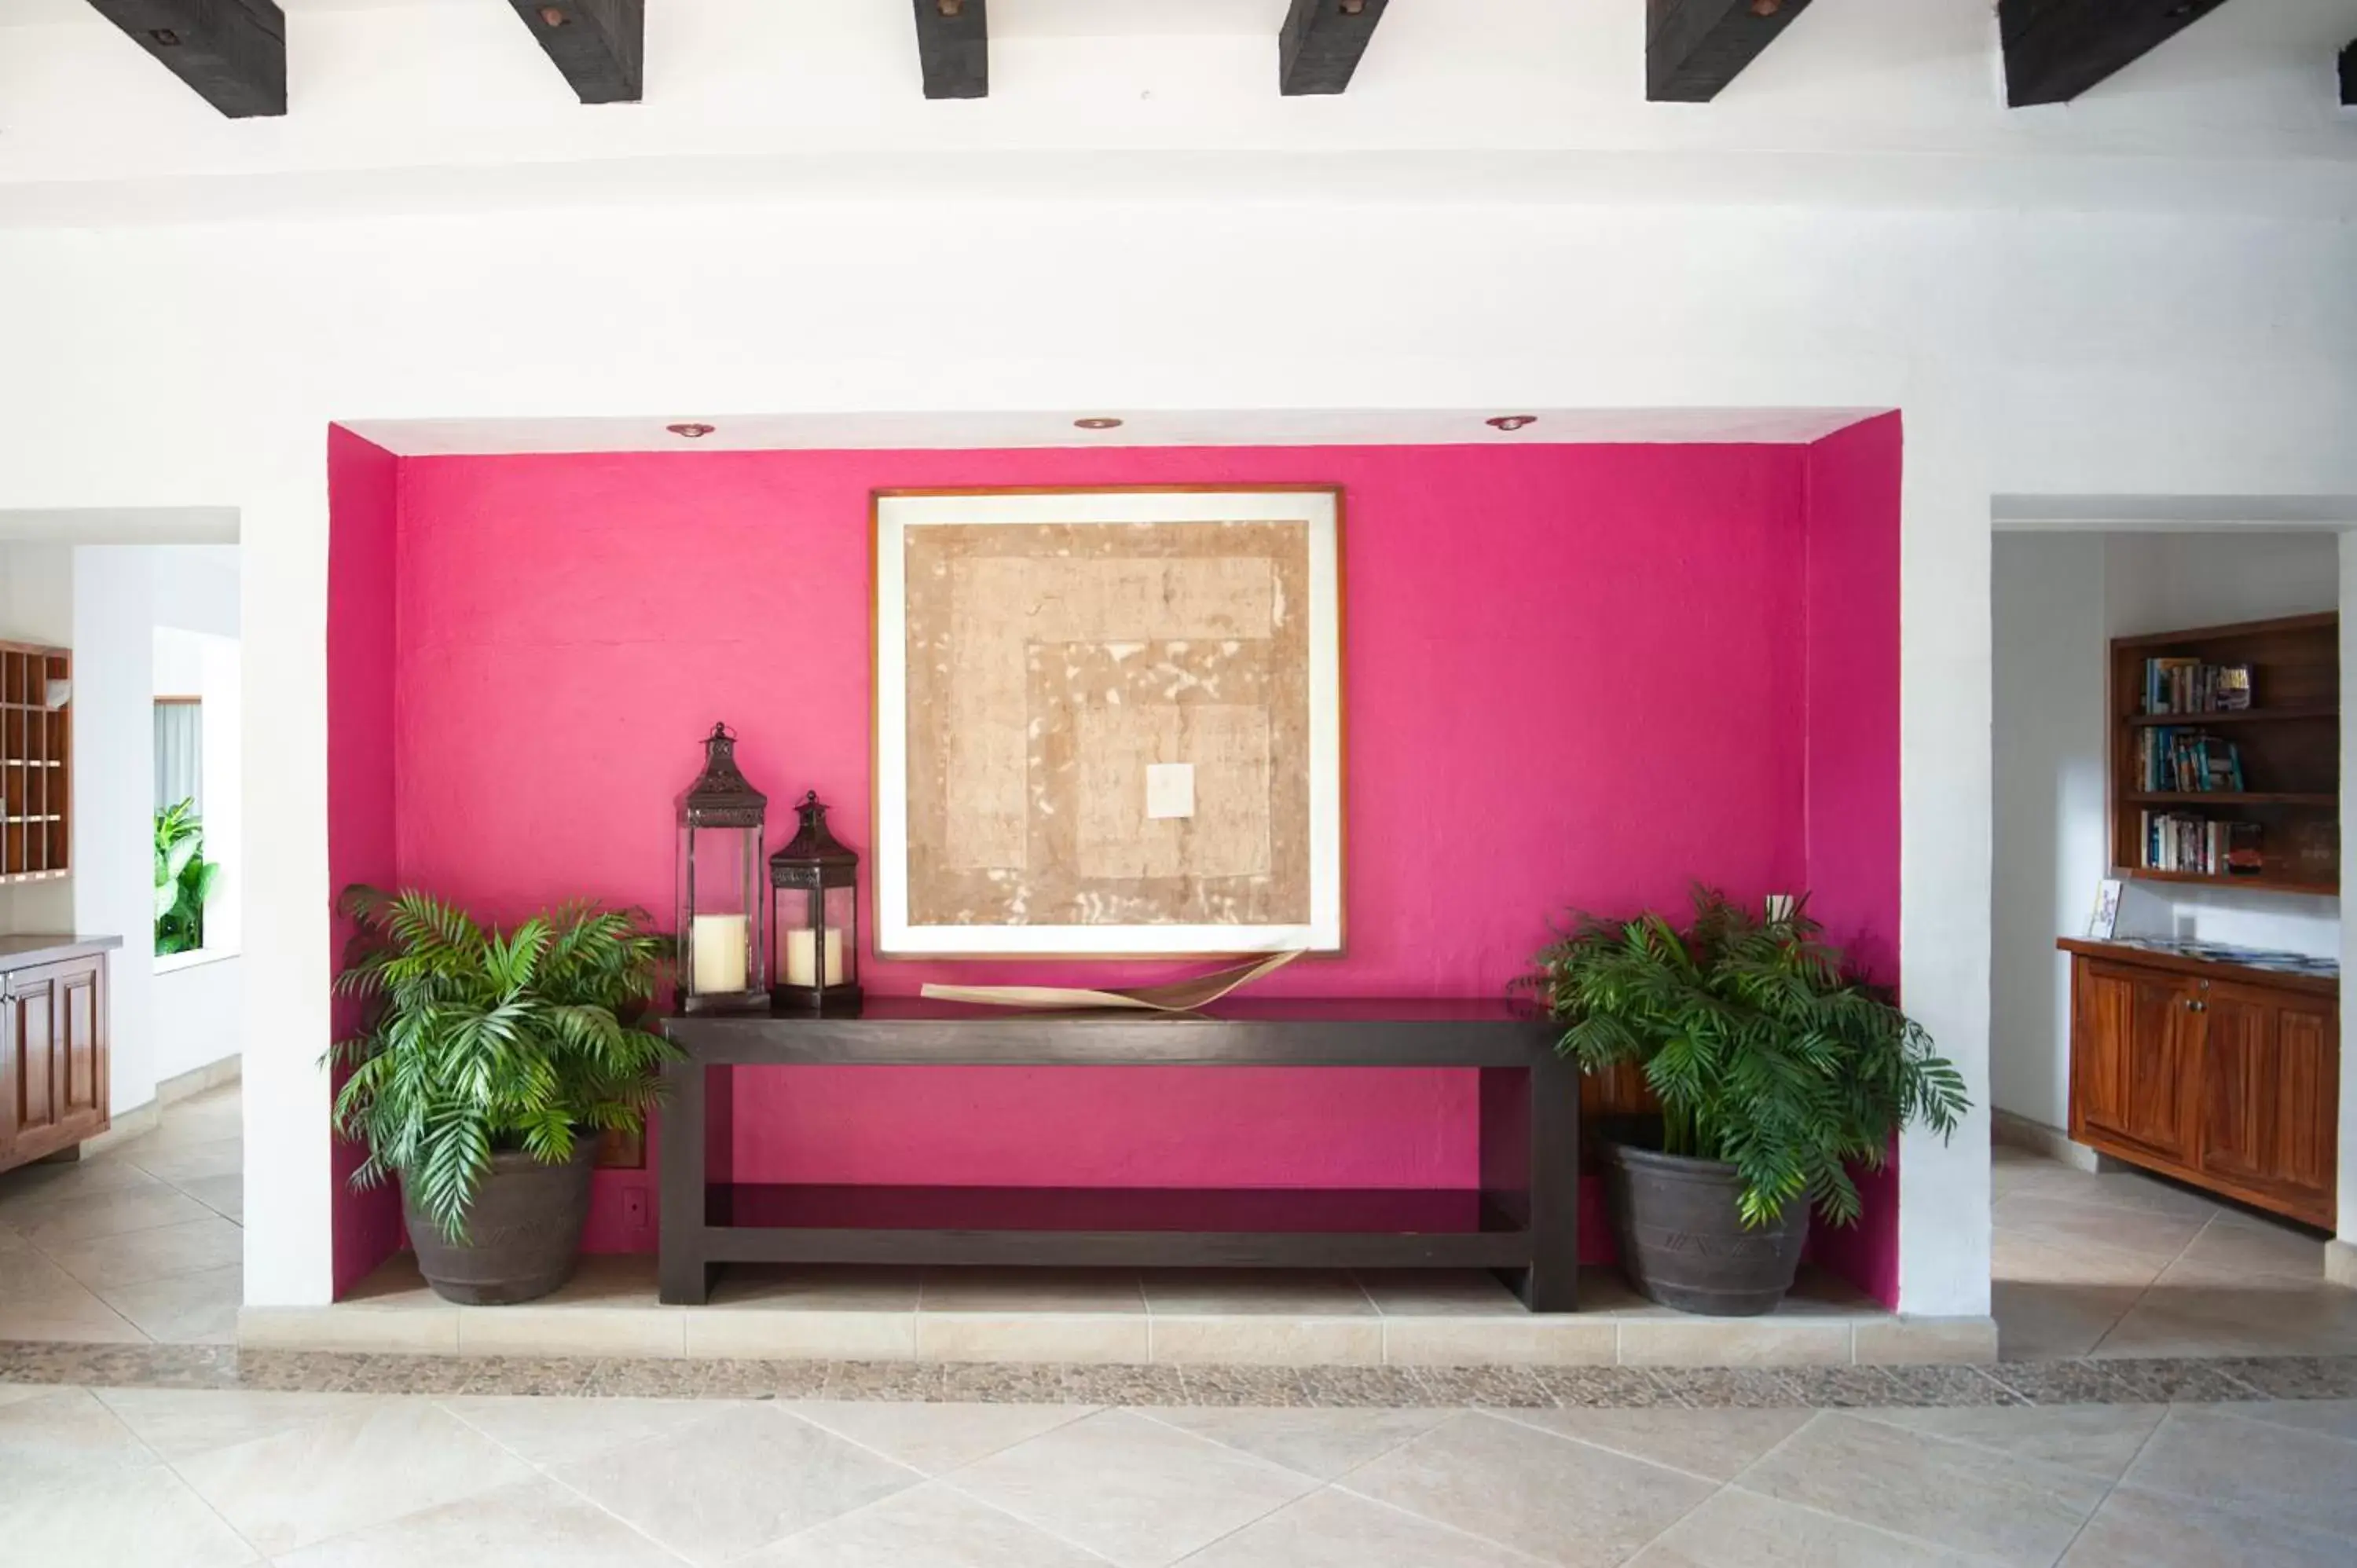 Facade/entrance, Lobby/Reception in Casa Natalia, Playa Esmeralda